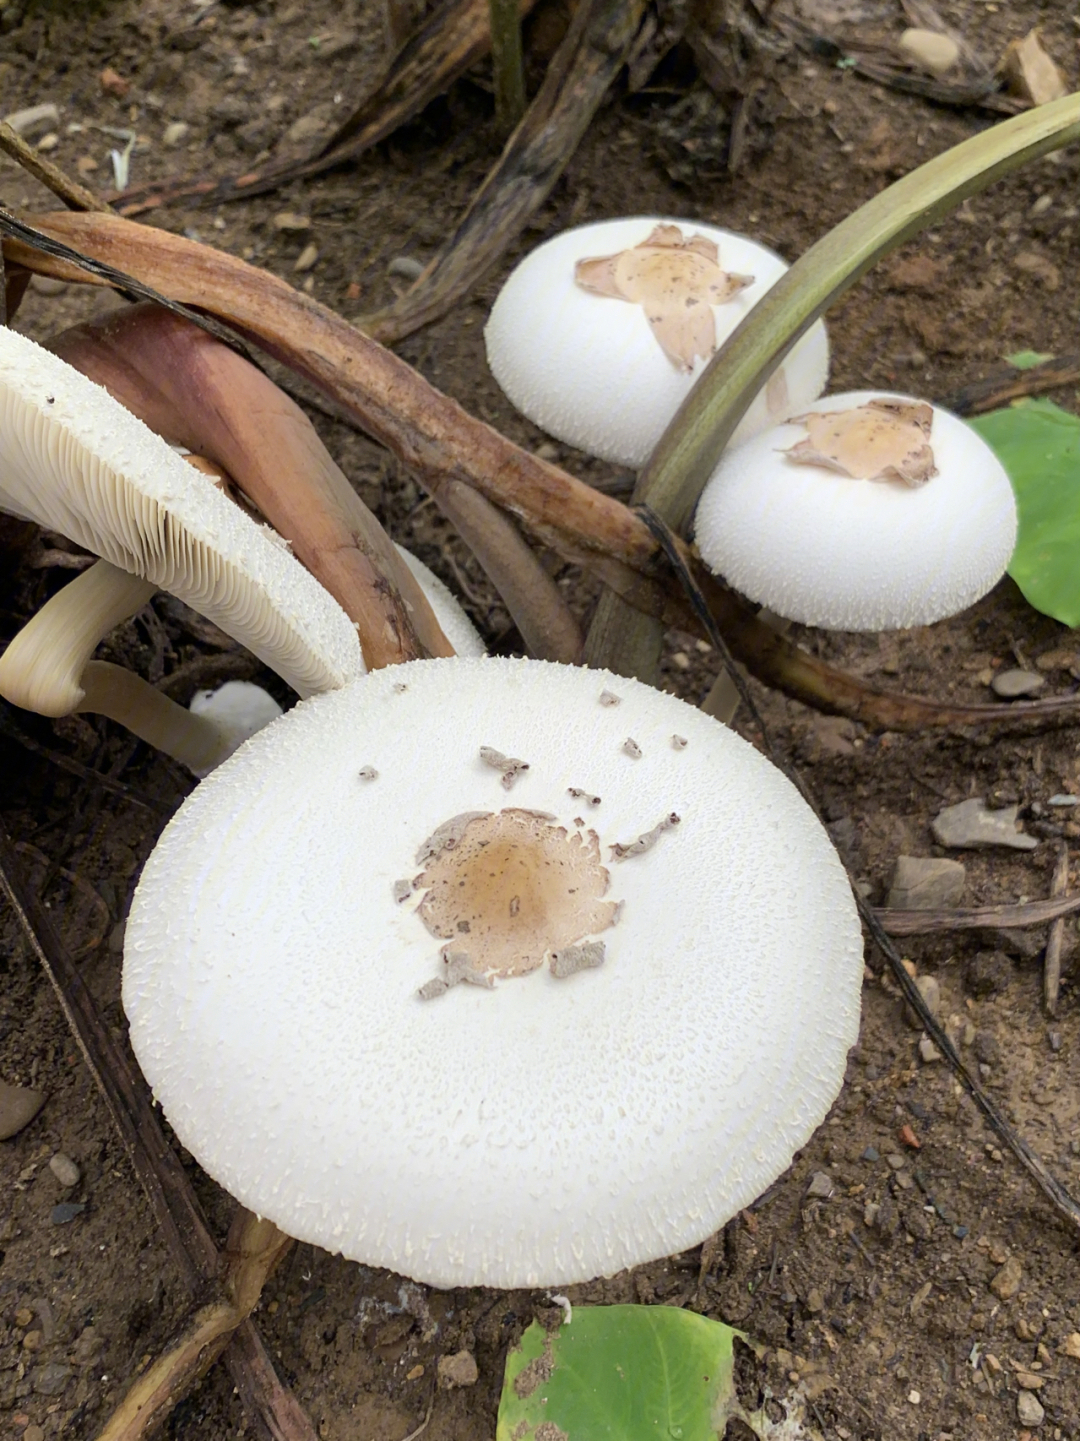 白色长条状蘑菇图片